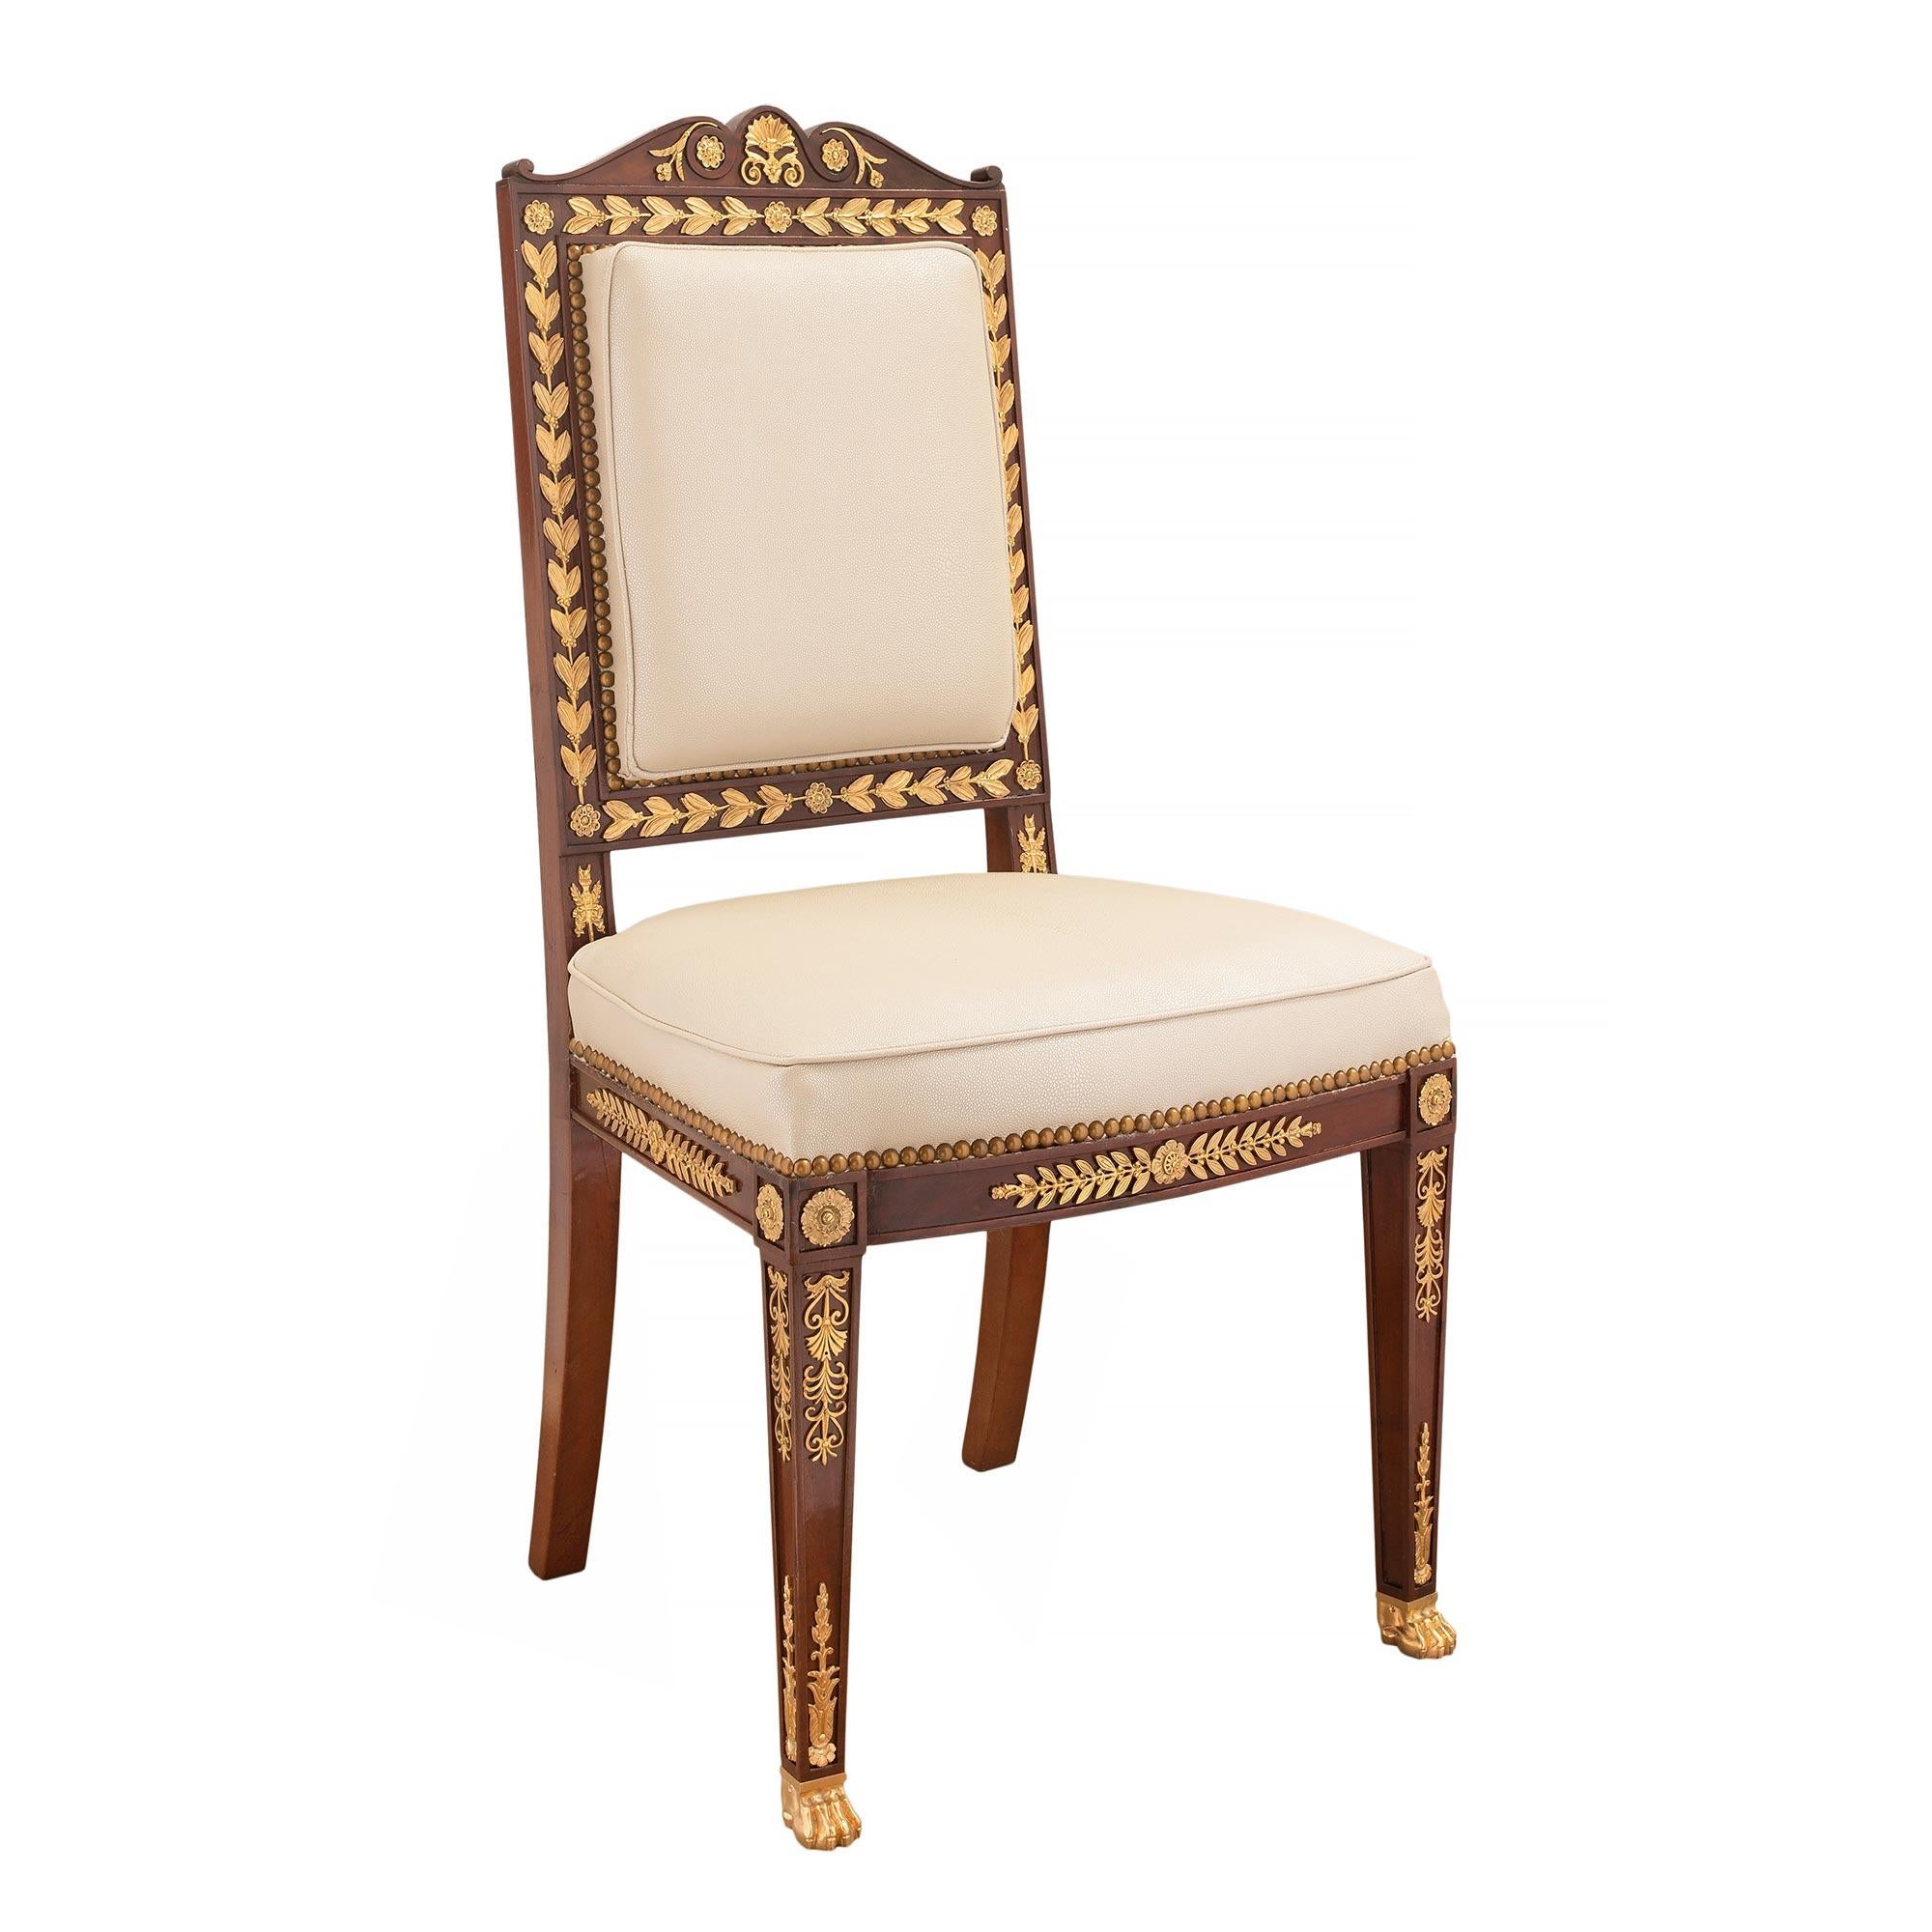 Magnifique chaise d'appoint en acajou massif et bronze doré de style Empire du XIXe siècle. La chaise est surélevée par de jolis pieds en patte d'oie en bronze doré et des pieds fuselés carrés. Chaque pied est rehaussé de panneaux décoratifs